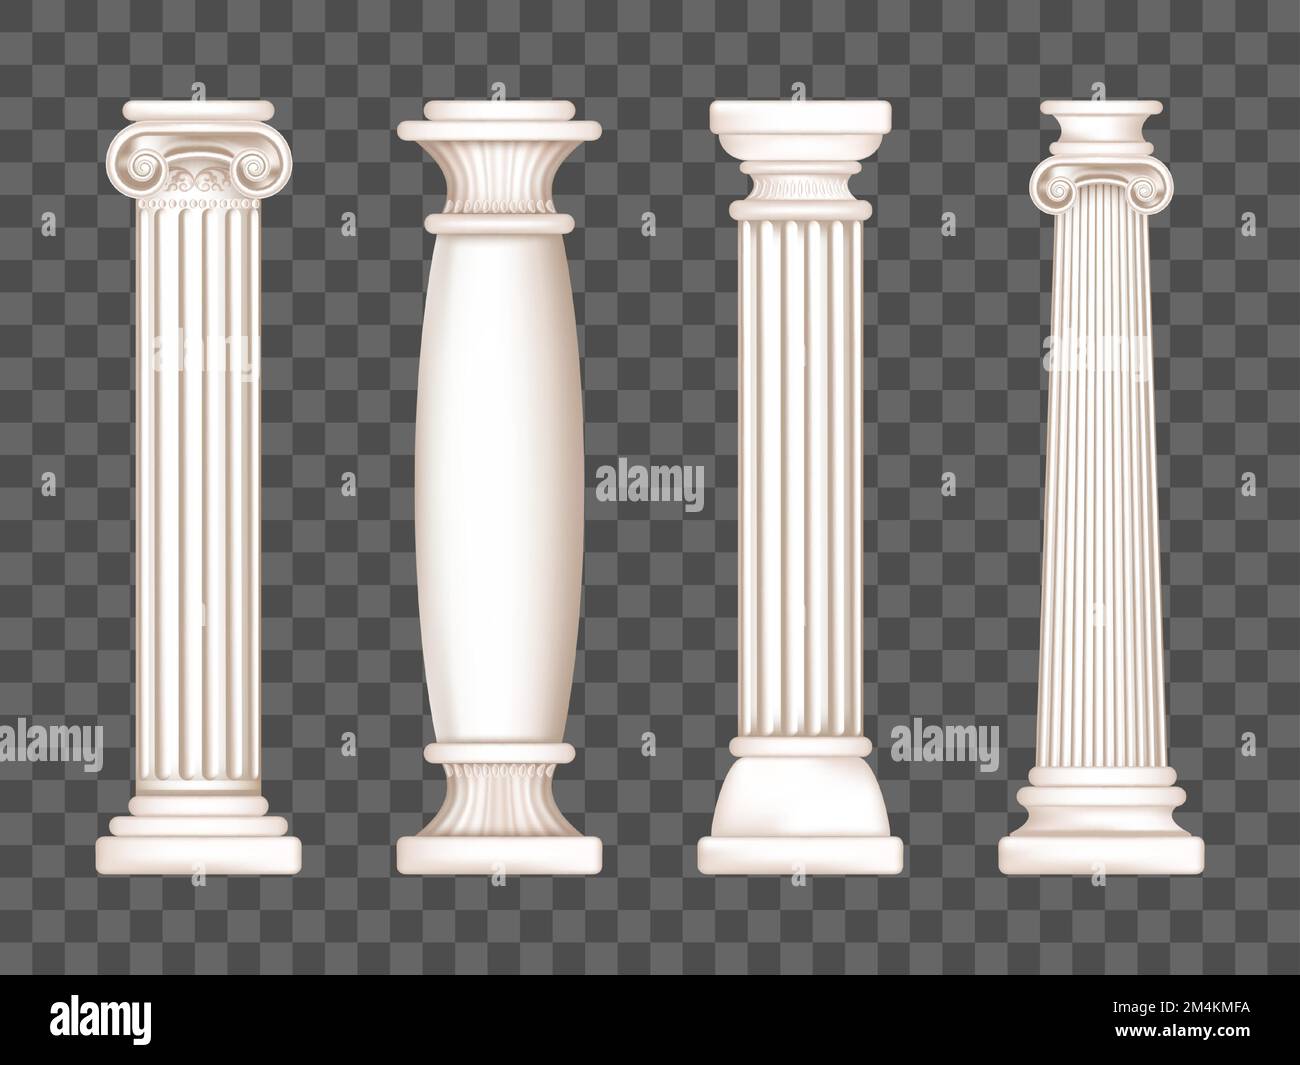 Antiche colonne romane, decorazioni in marmo. Vector realistiche antiche colonne bianche greche con capitelli in stile dorico, corinzio, ionico e toscano isolati su fondo trasparente Illustrazione Vettoriale